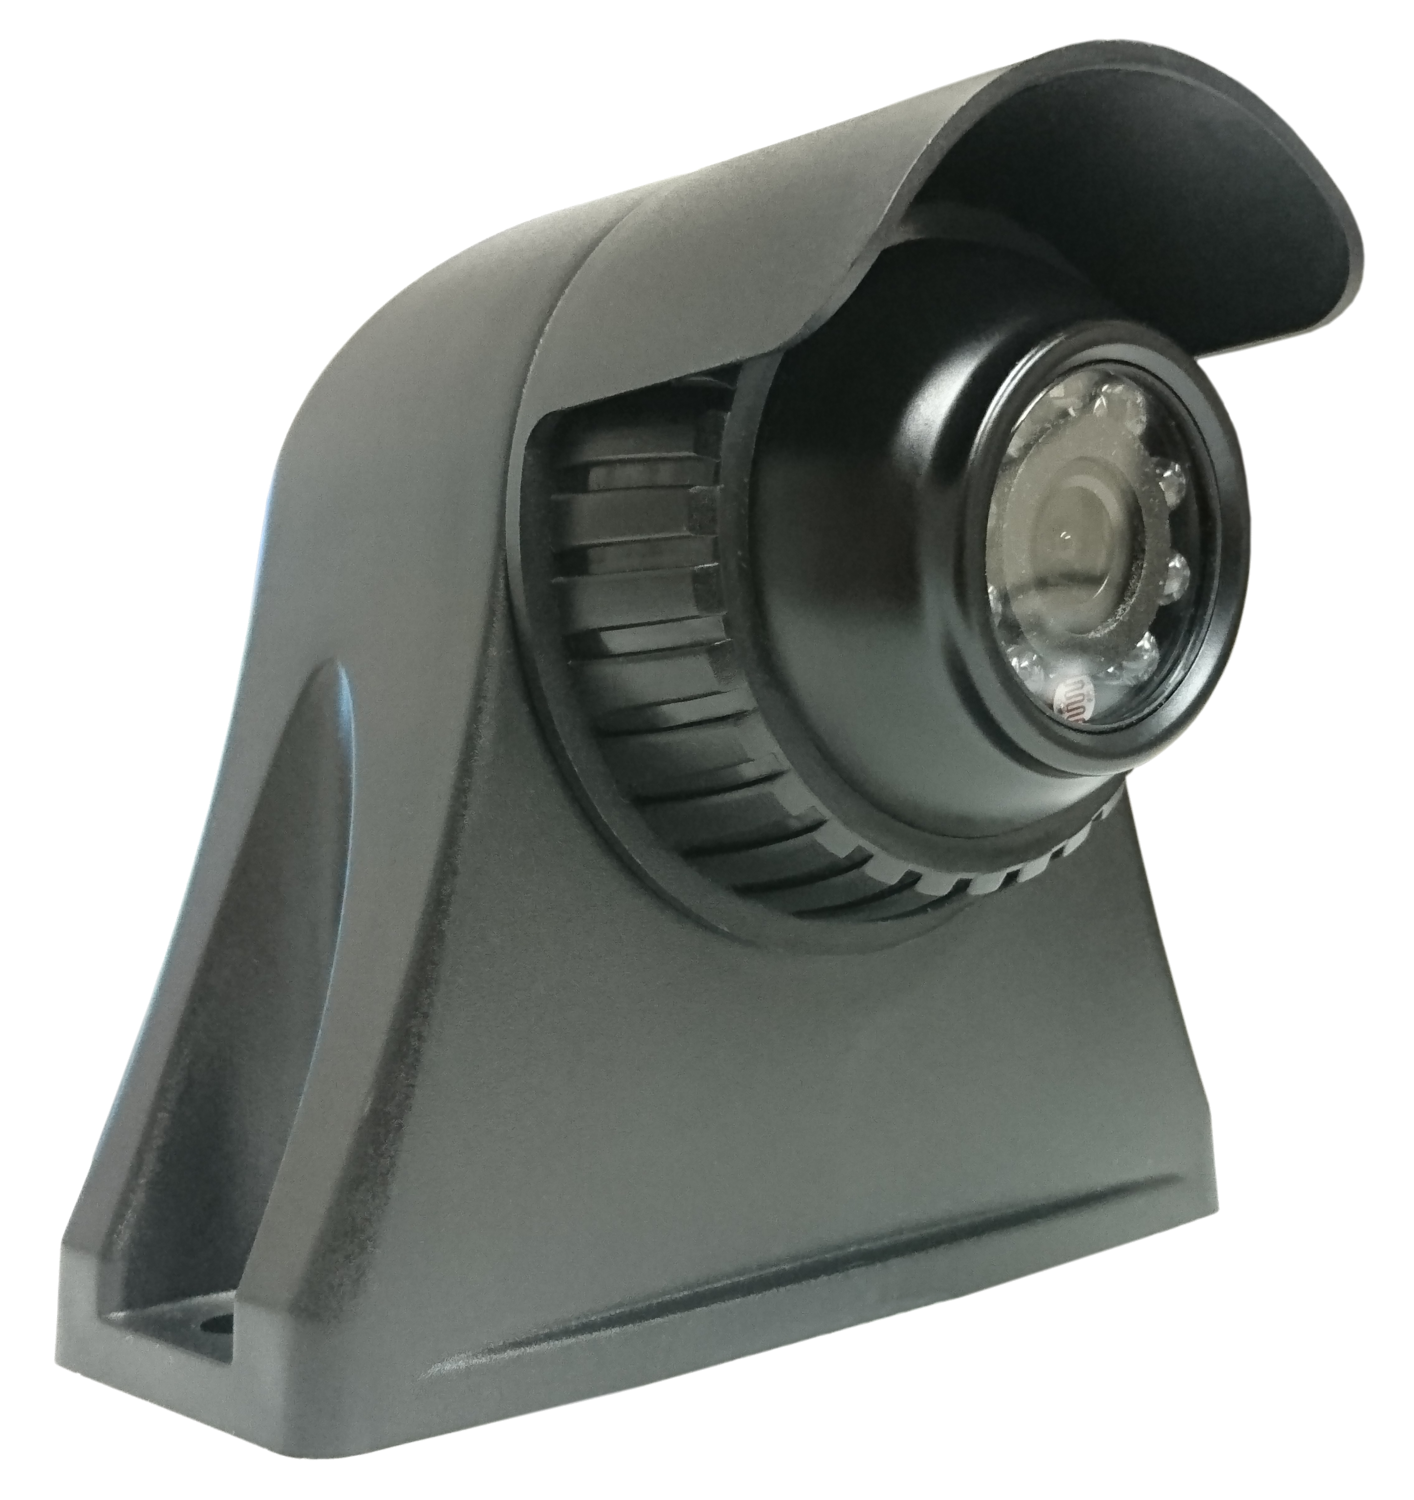 12CVP-2: Side view camera avec support latéral - vision nocturne (PAL)